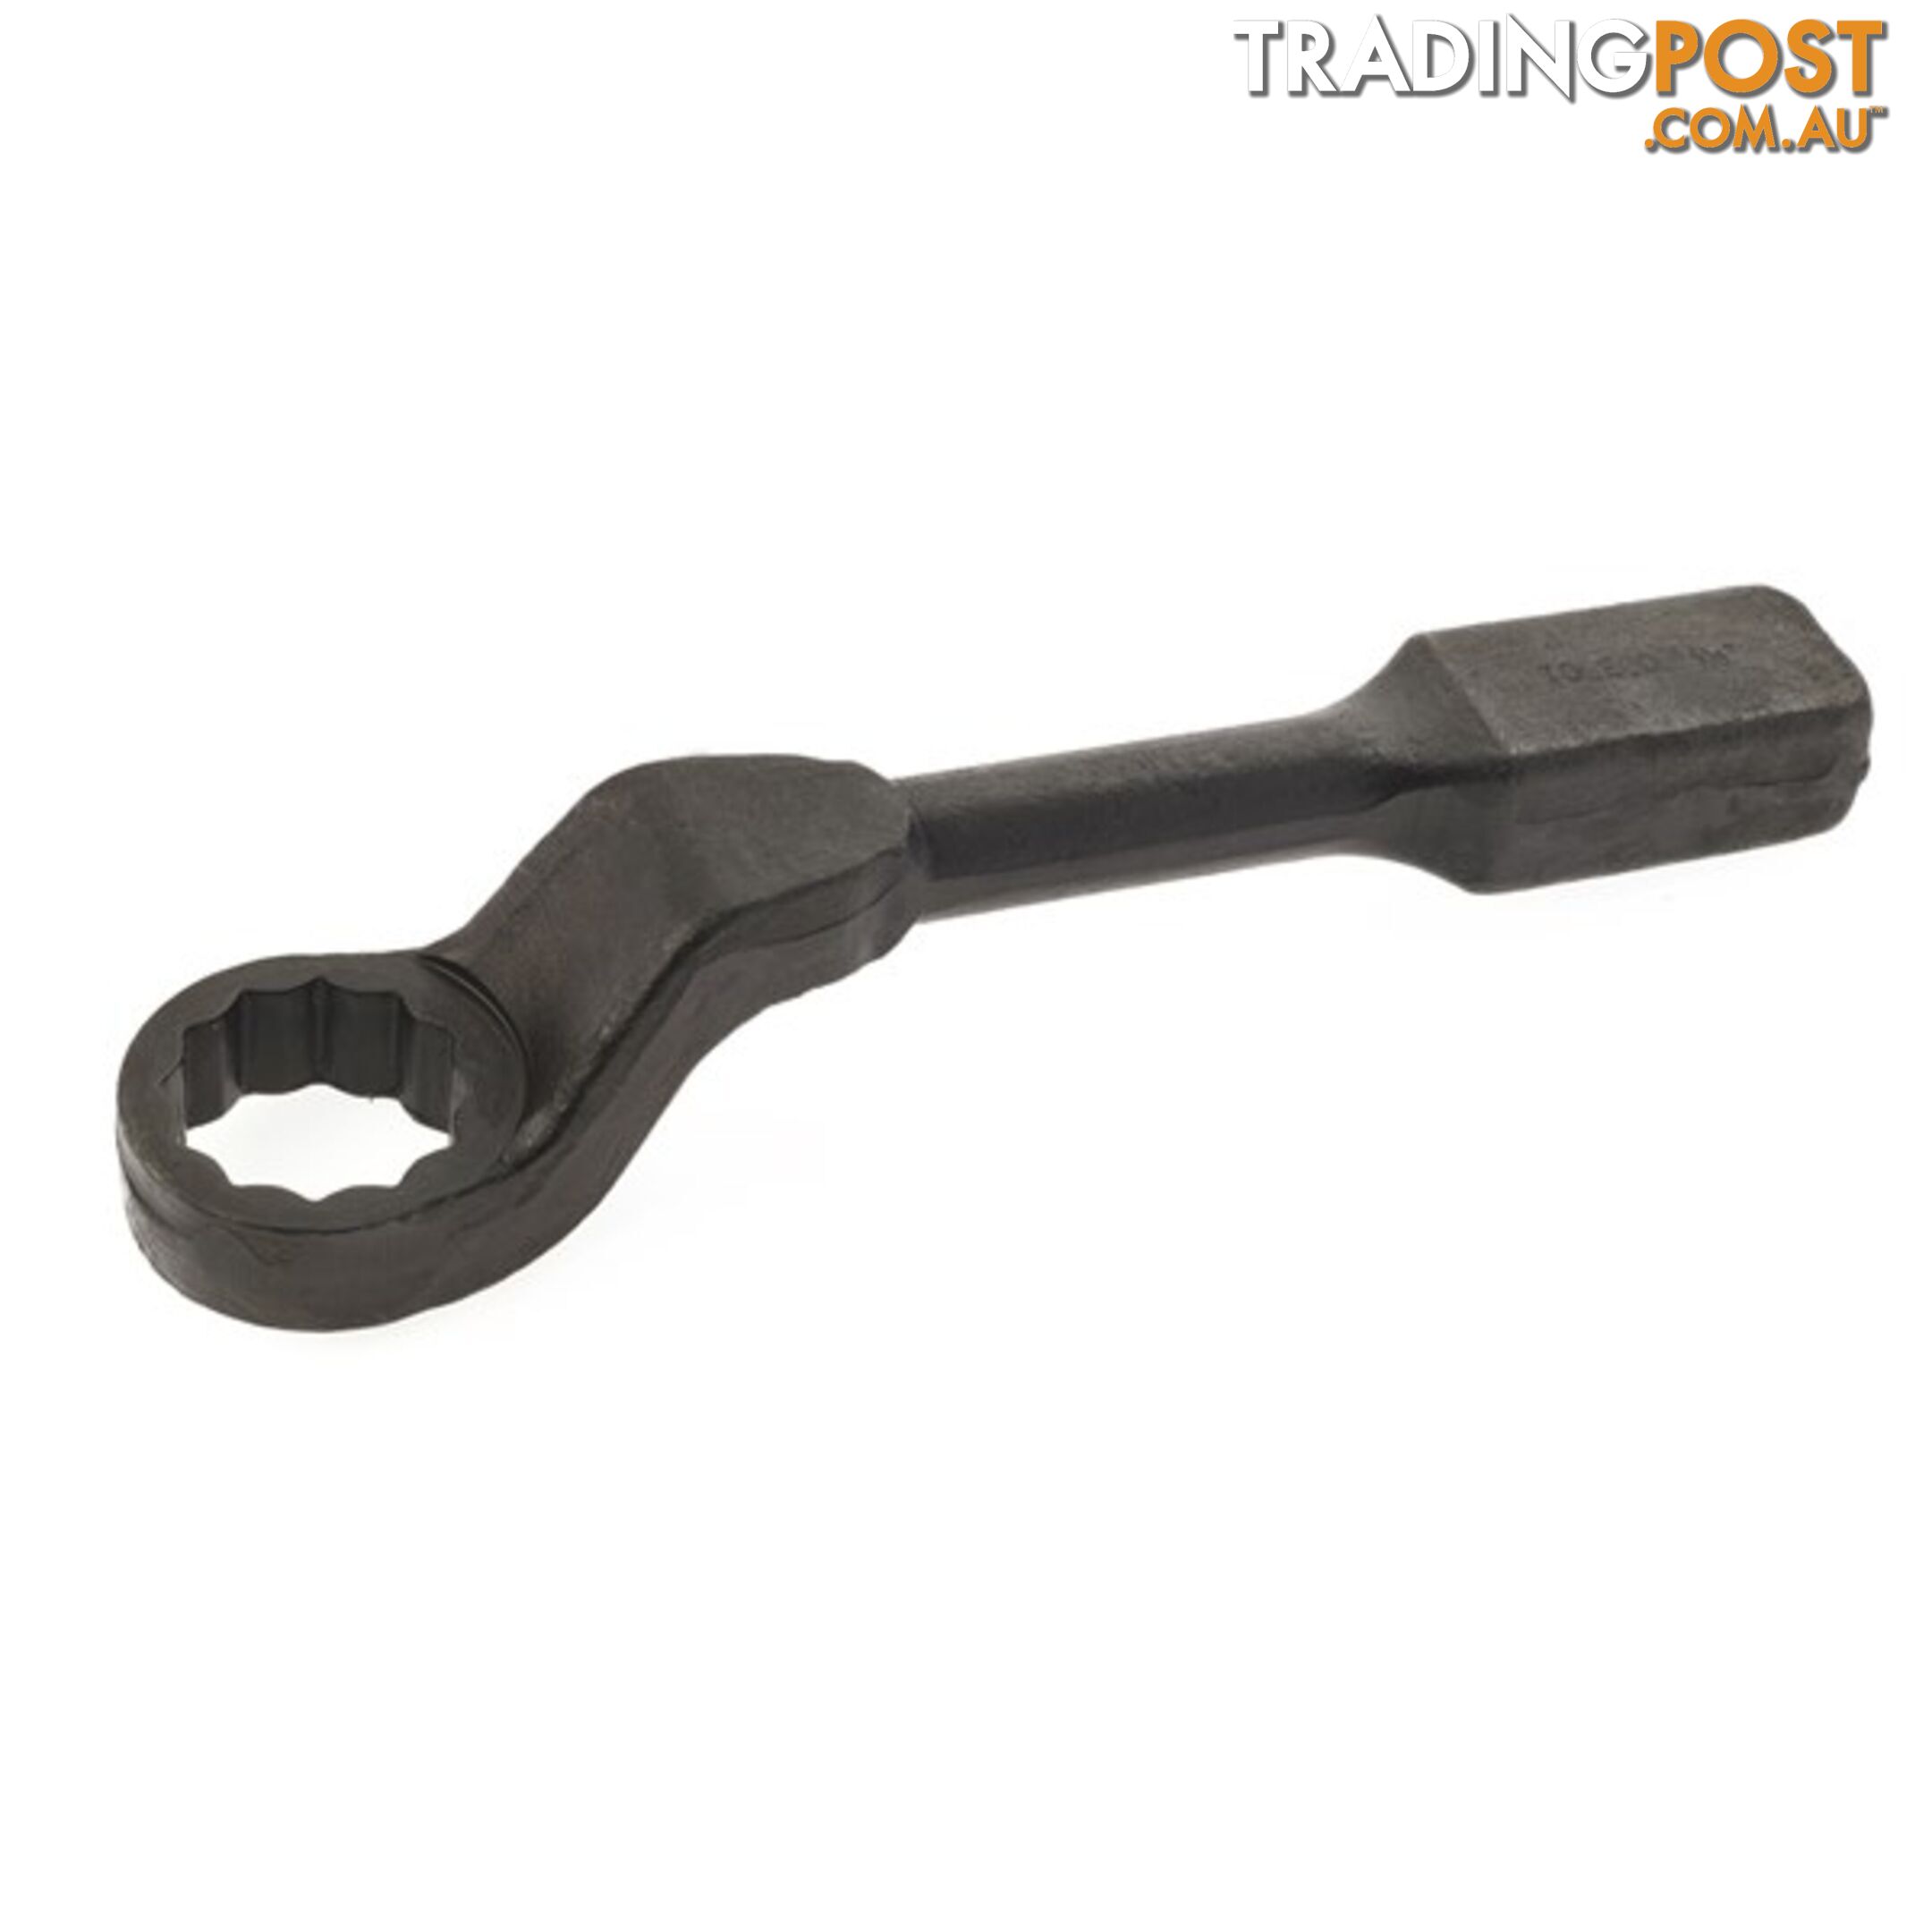 Offset / Cranked Slogging Wrench  - 1 3/16 " SKU - SWR1187C